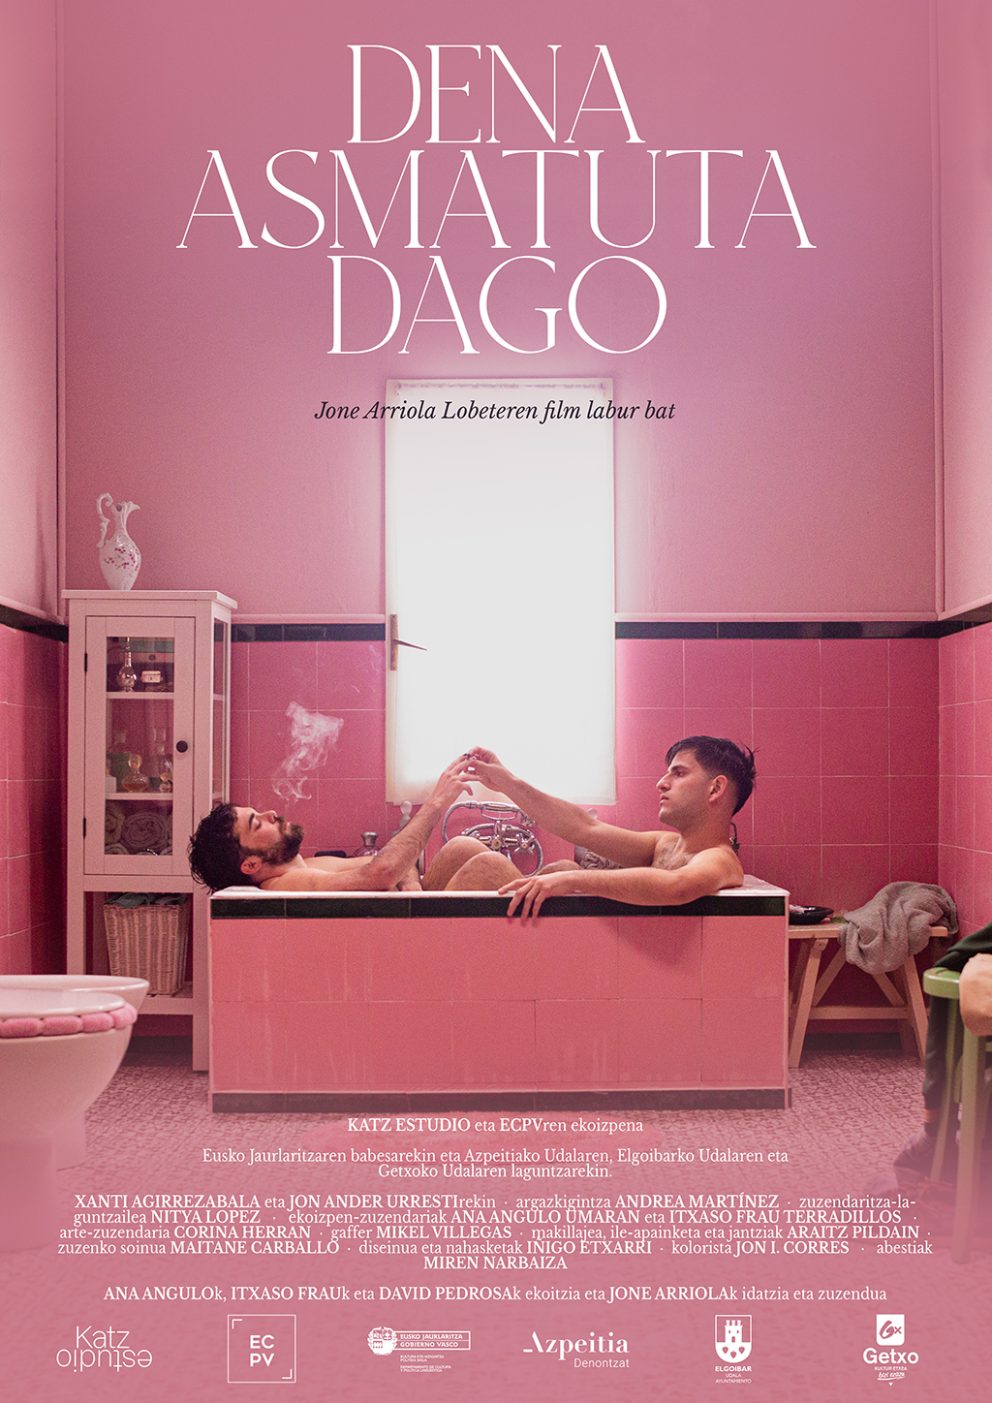 Poster-Dena-Asmatuta-Dago